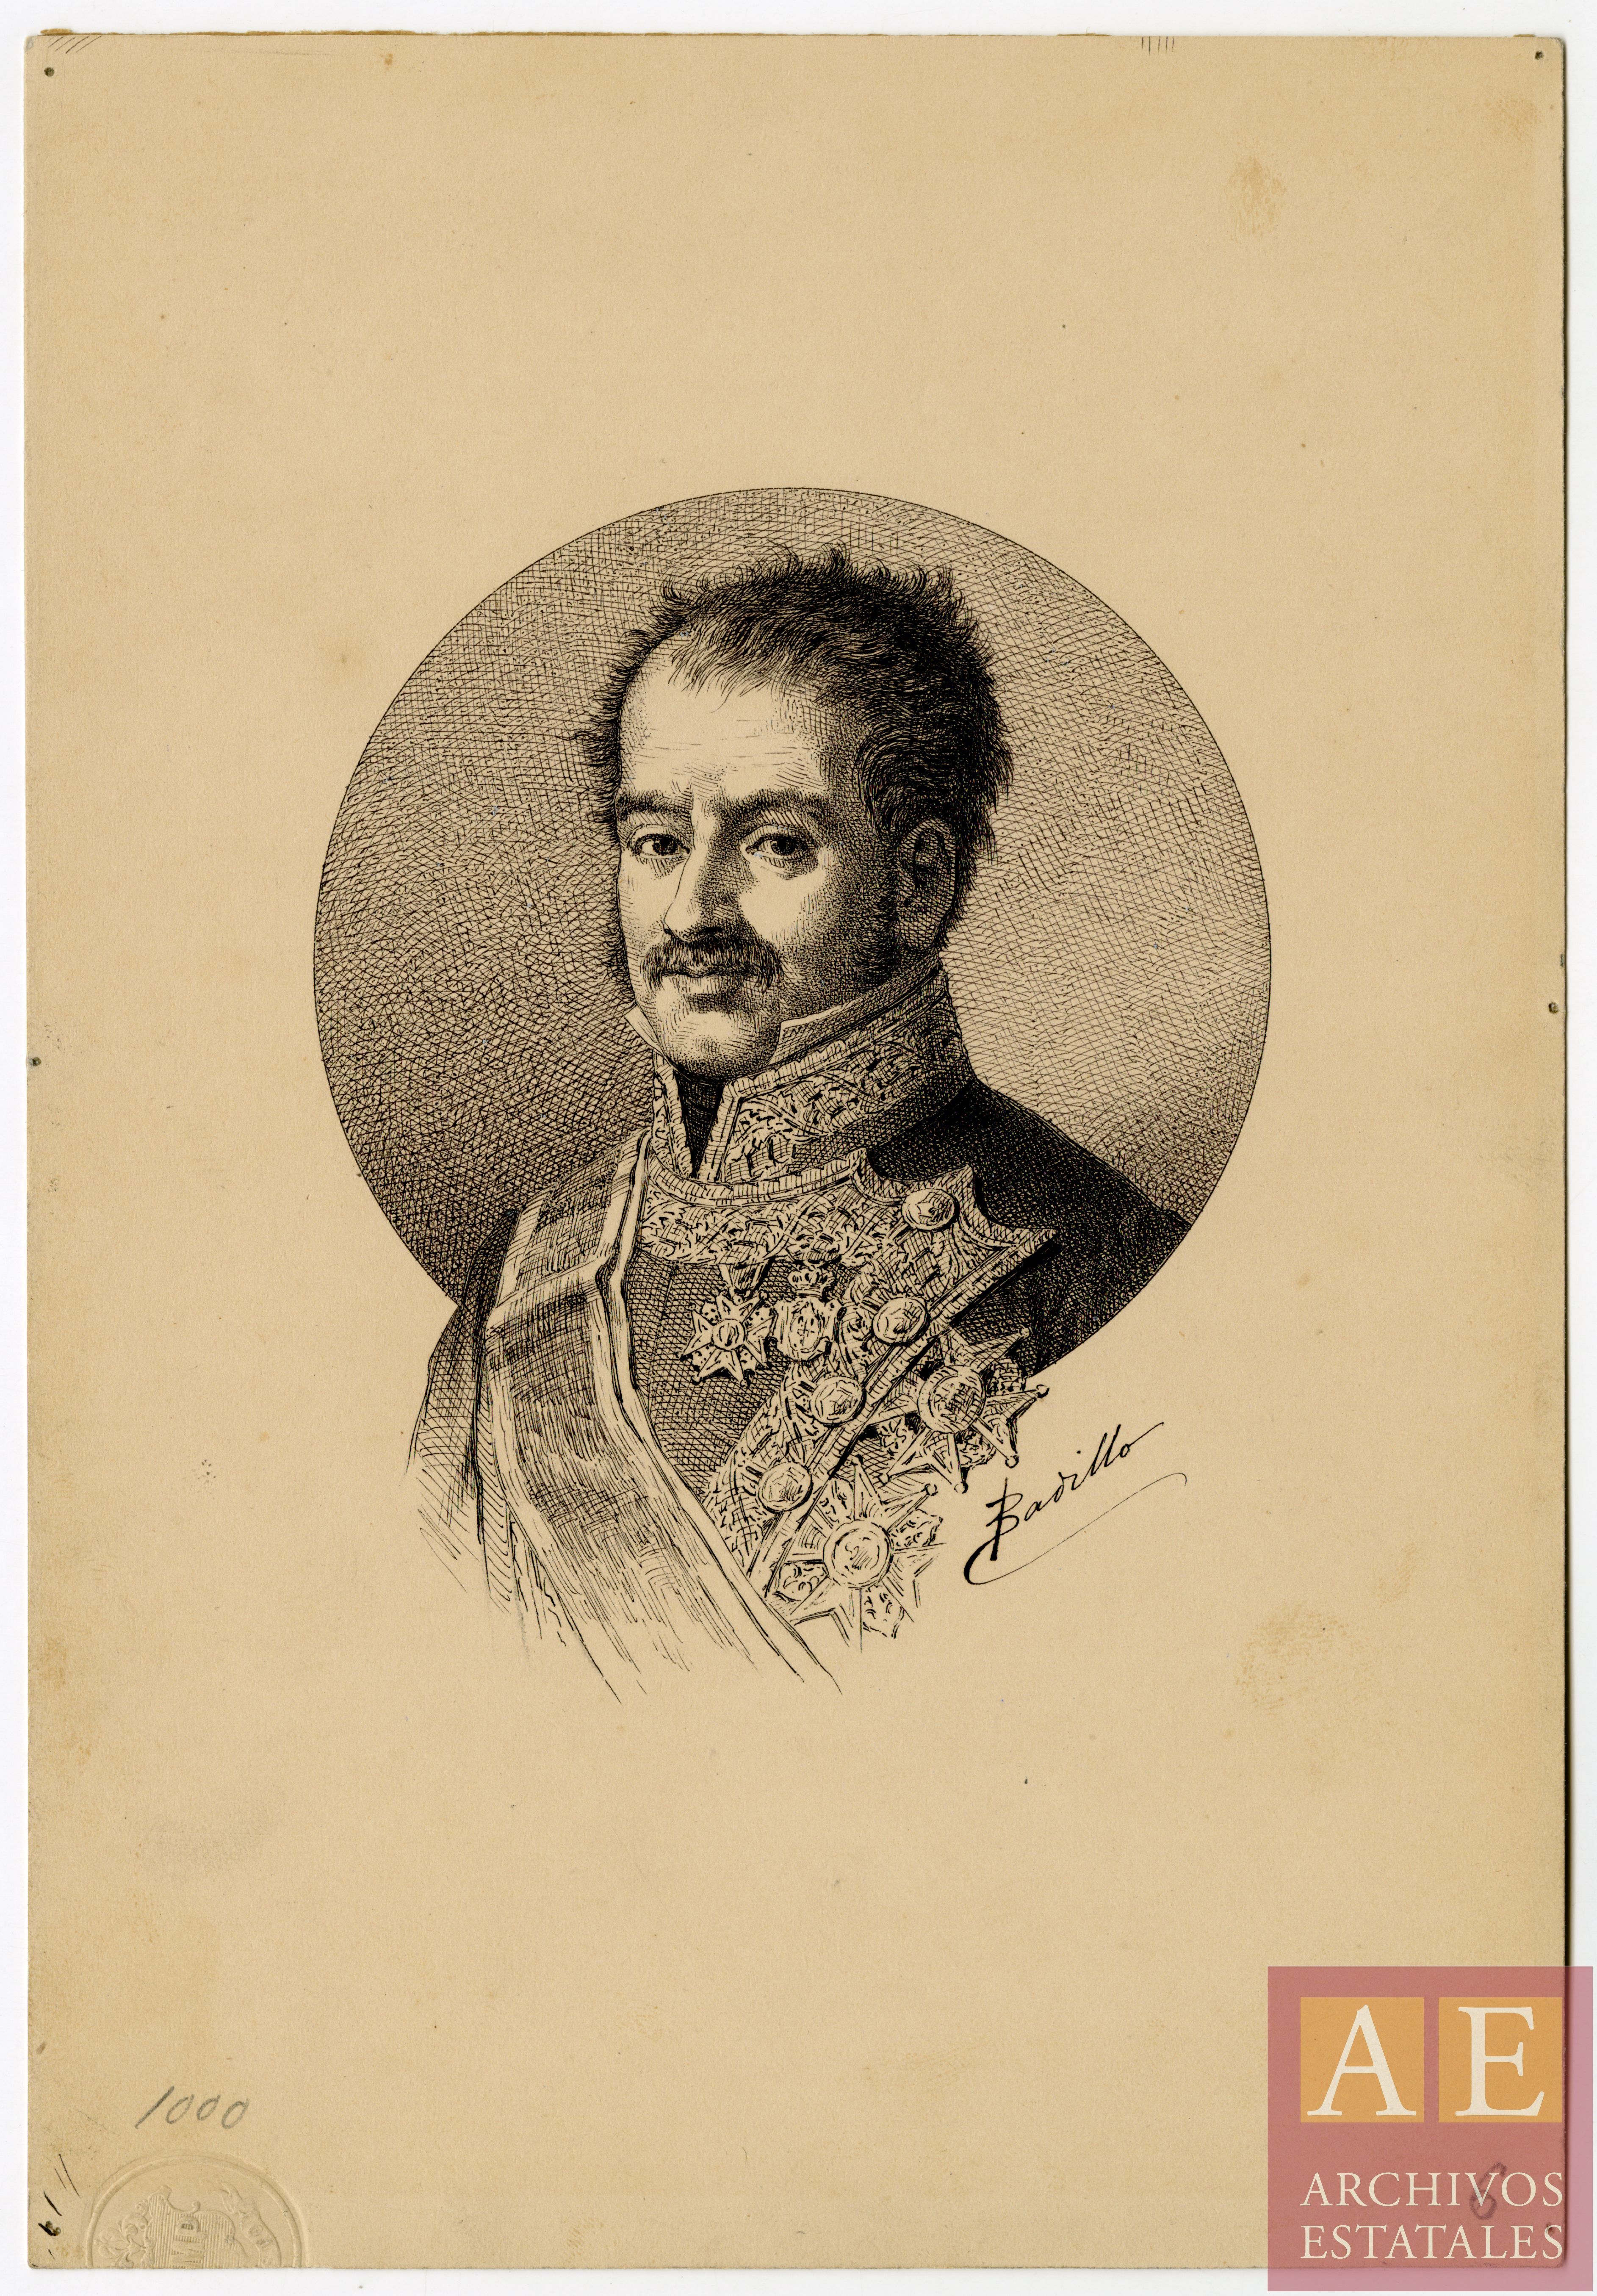 Rebolledo Palafox Melci, José de (1775-1847)